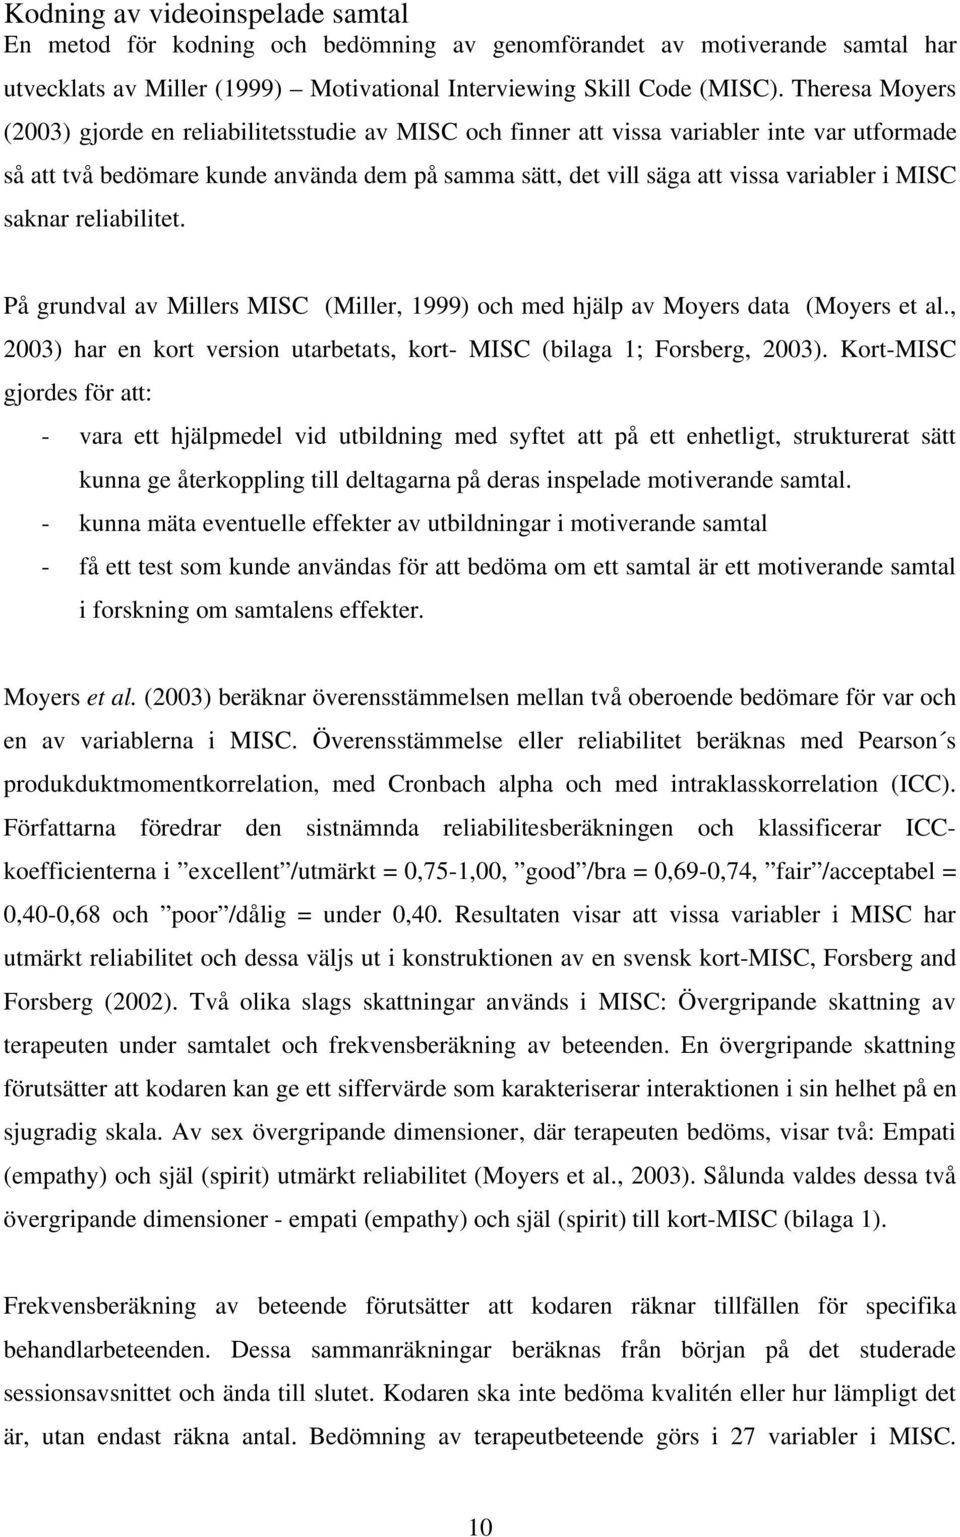 MISC saknar reliabilitet. På grundval av Millers MISC (Miller, 1999) och med hjälp av Moyers data (Moyers et al., 2003) har en kort version utarbetats, kort- MISC (bilaga 1; Forsberg, 2003).